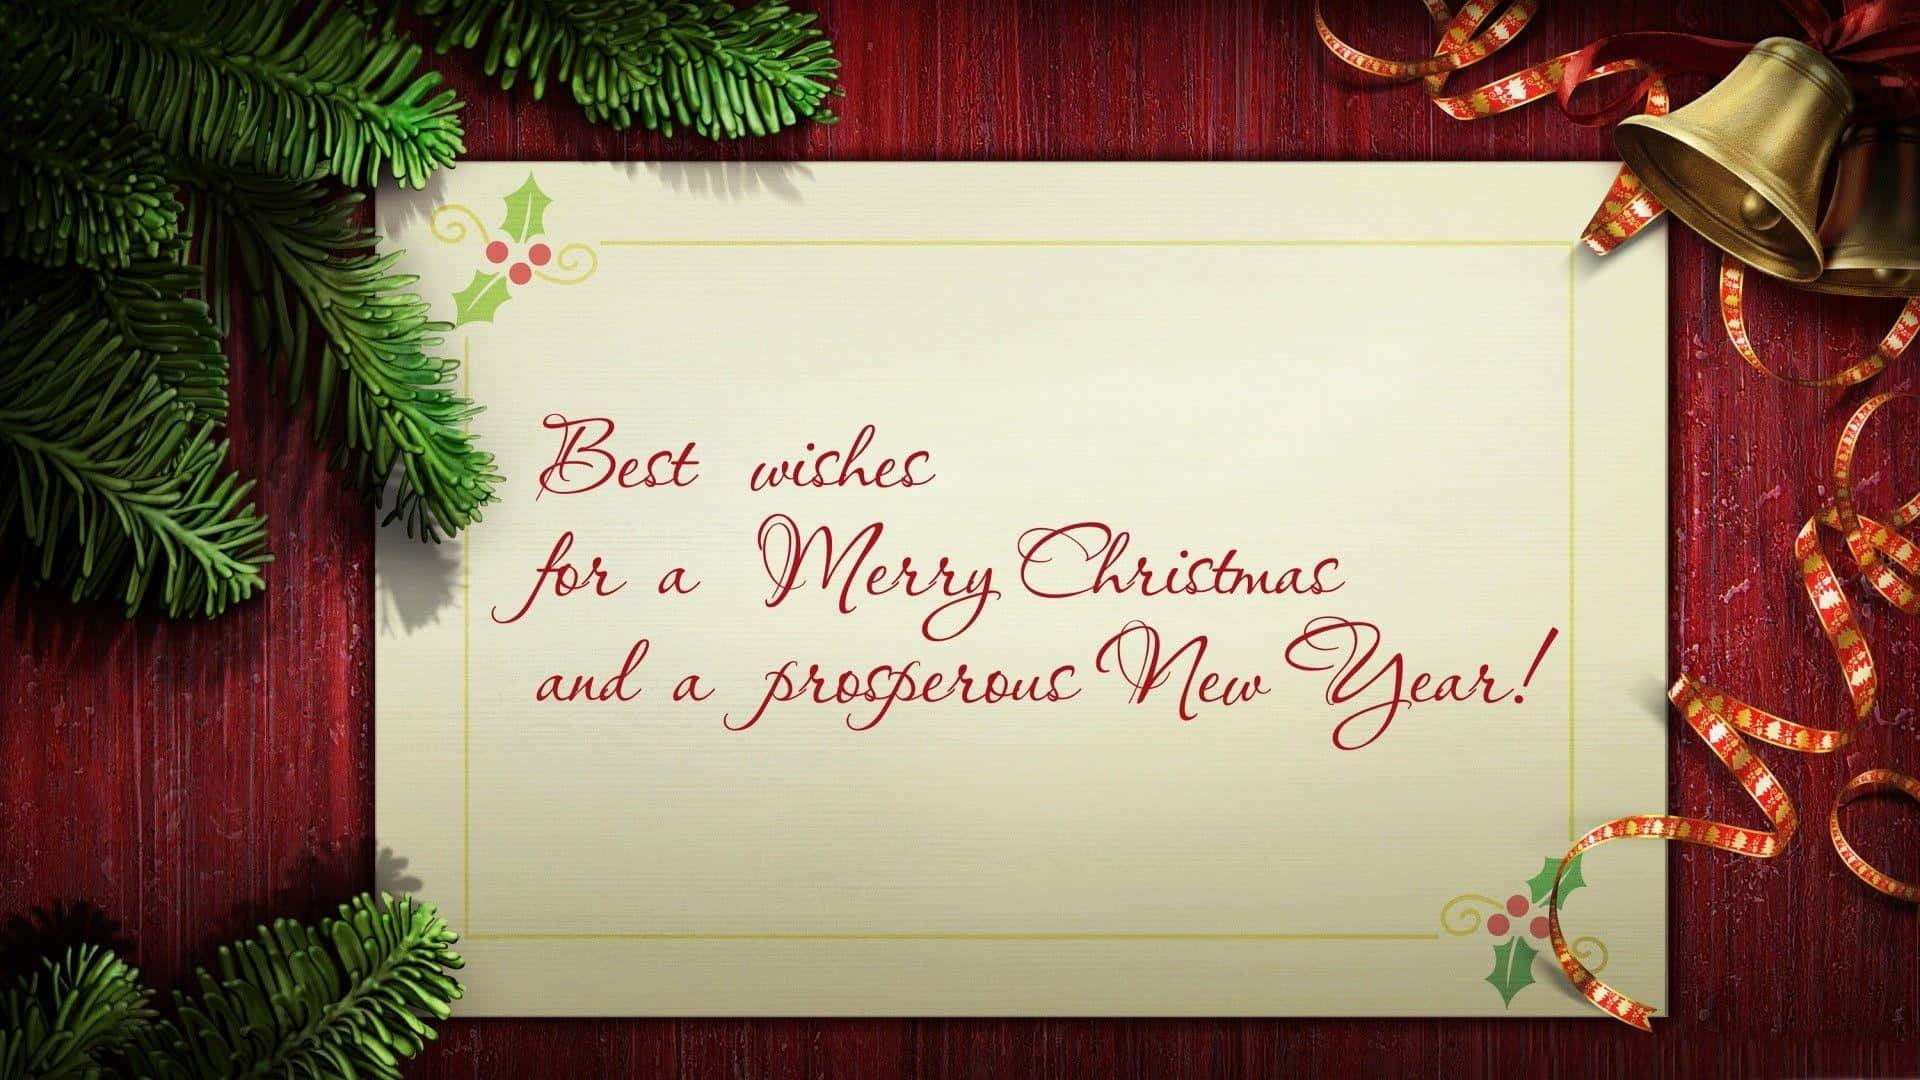 Vis din ferieglæde med det perfekte julekort billede fond